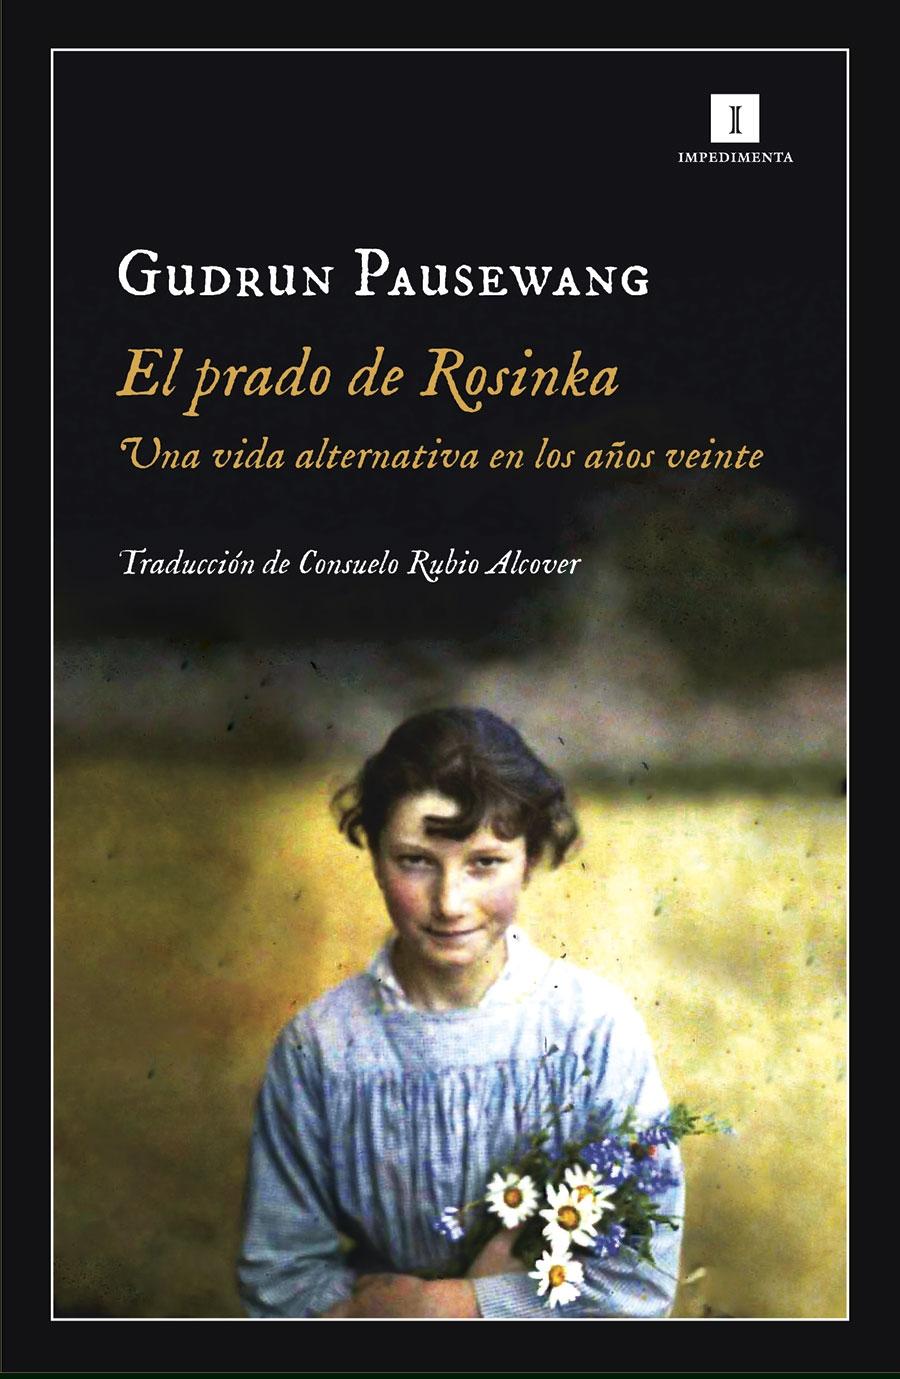 El Prado de Rosinka "Una Vida Alternativa en los Años Veinte"